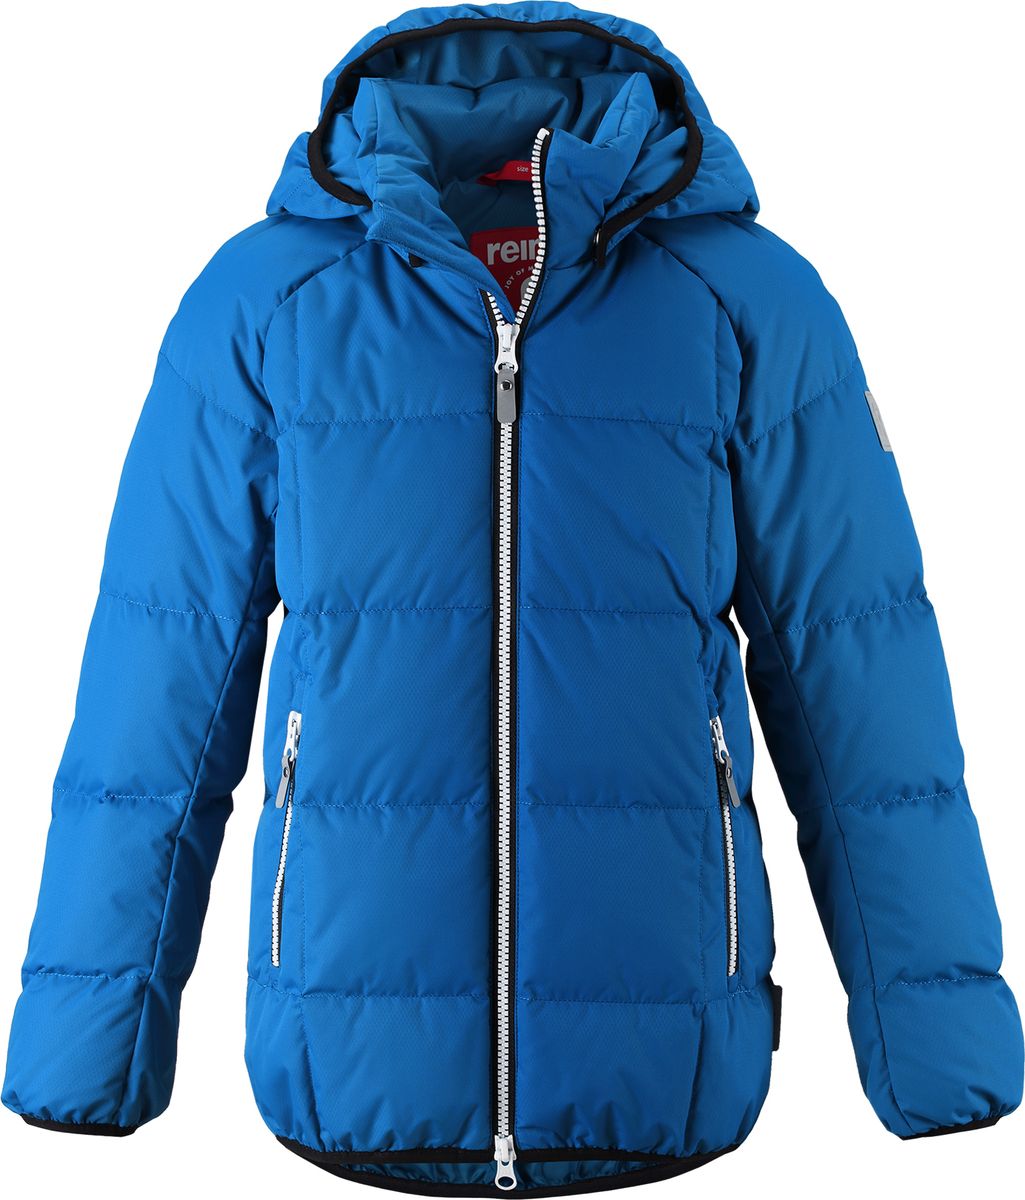 Куртка для мальчика Reima Jord, цвет: синий. 5313596680. Размер 140